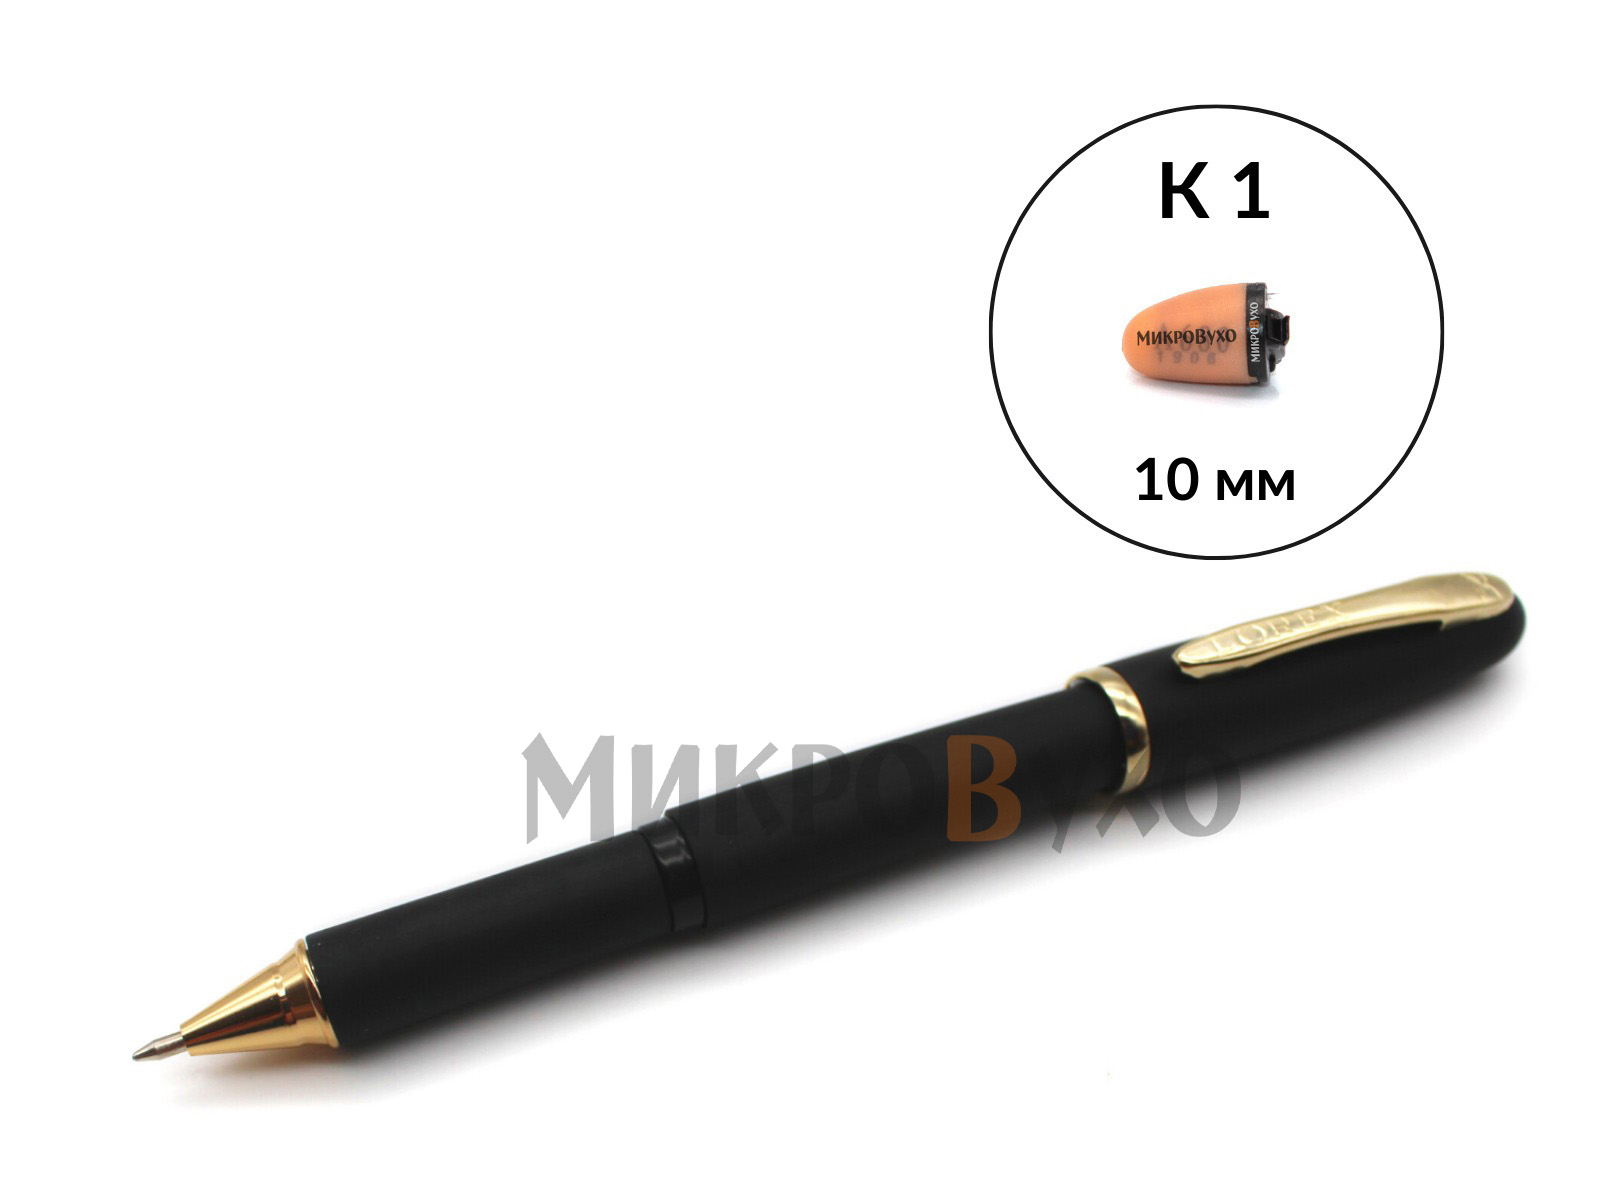 Гарнитура Ручка Business c капсульным микронаушником K1 10 мм - изображение